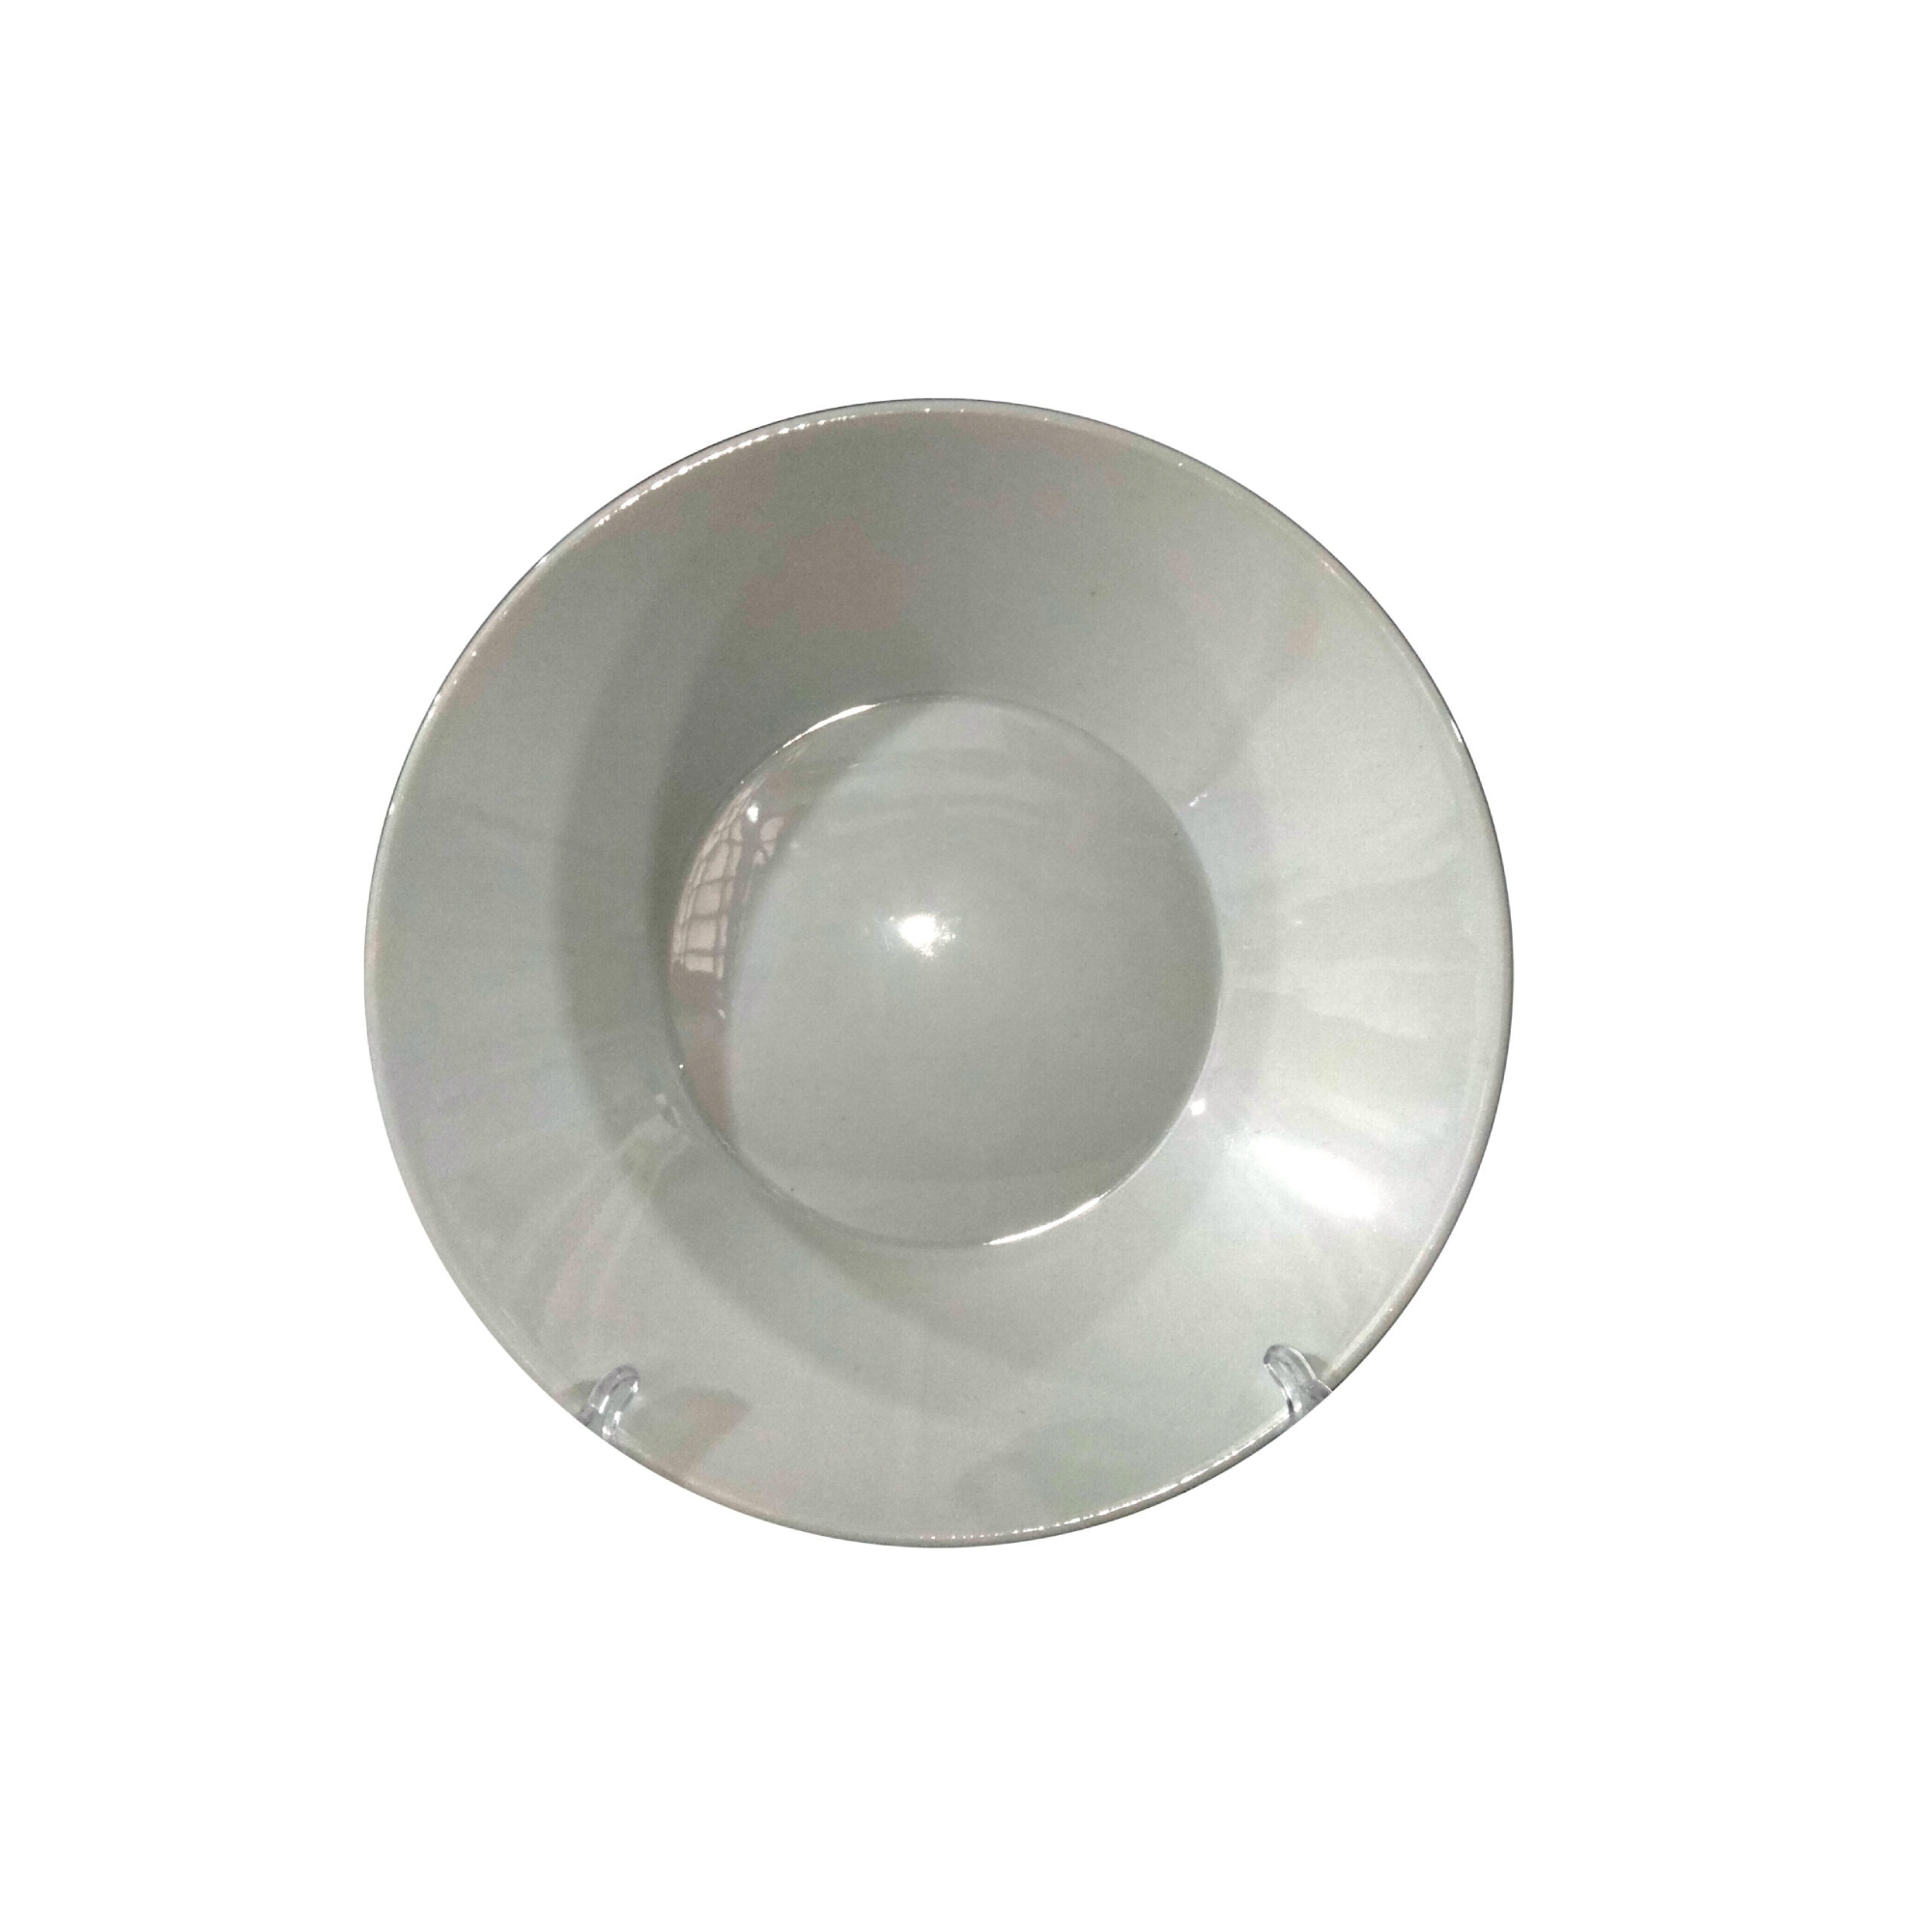 Тарелка глубокая Thun 1794 Tom Идеал отводка платина 22 см тарелка глубокая bernadotte деколь отводка платина 23 см 6 шт p1750003jqz3632021 thun 1794 a s